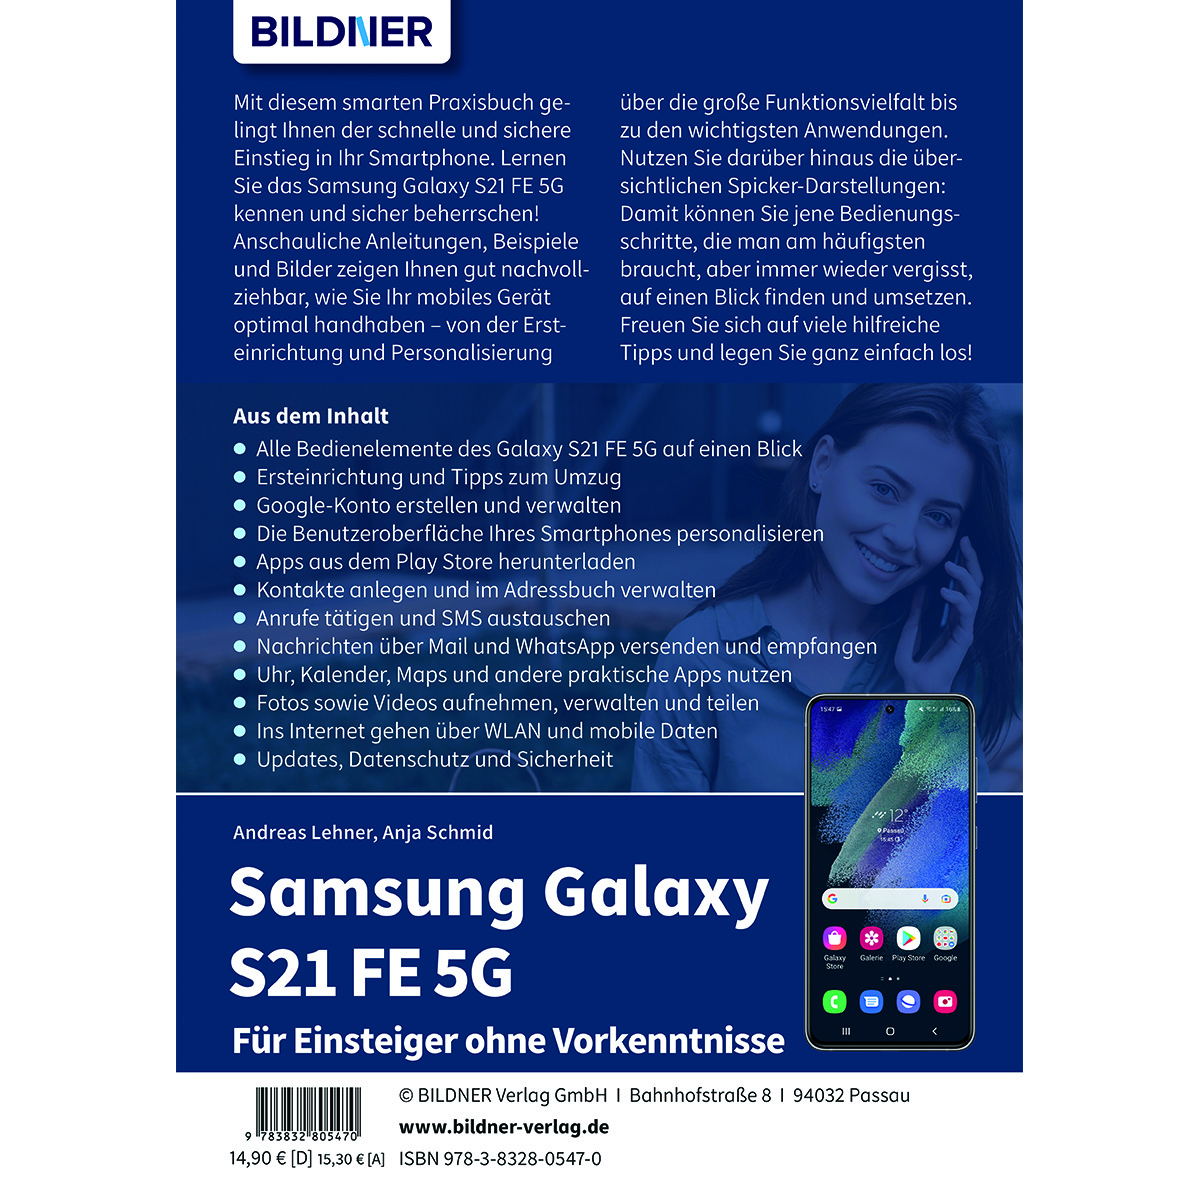 Samsung Galaxy S21 FE - ohne Vorkenntnisse Einsteiger Für